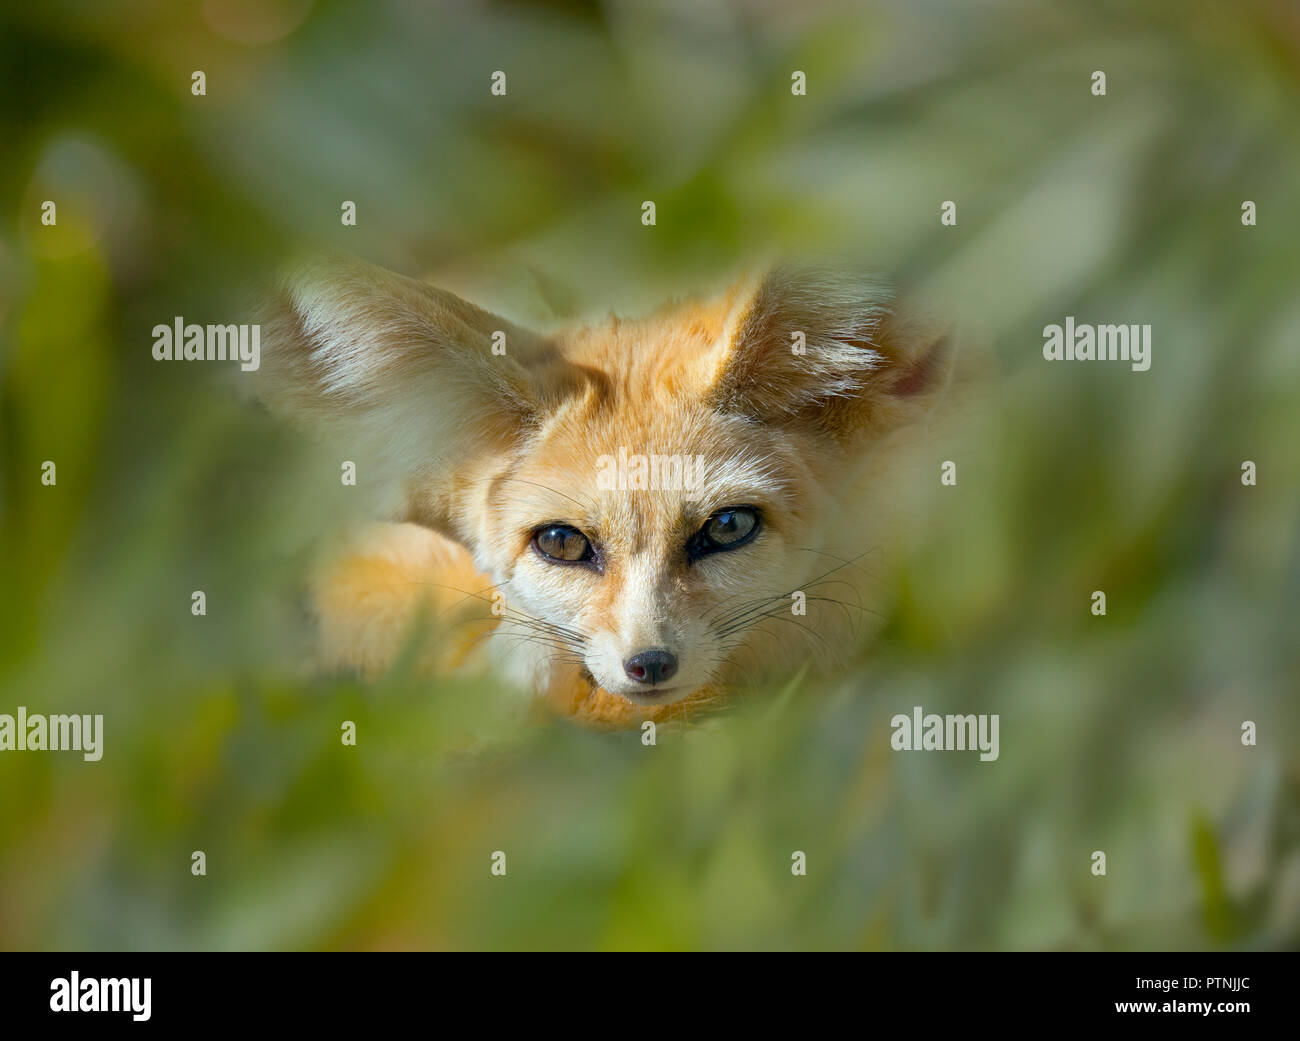 Fennec fox Vulpes zerda dormir fotografía cautivo Foto de stock